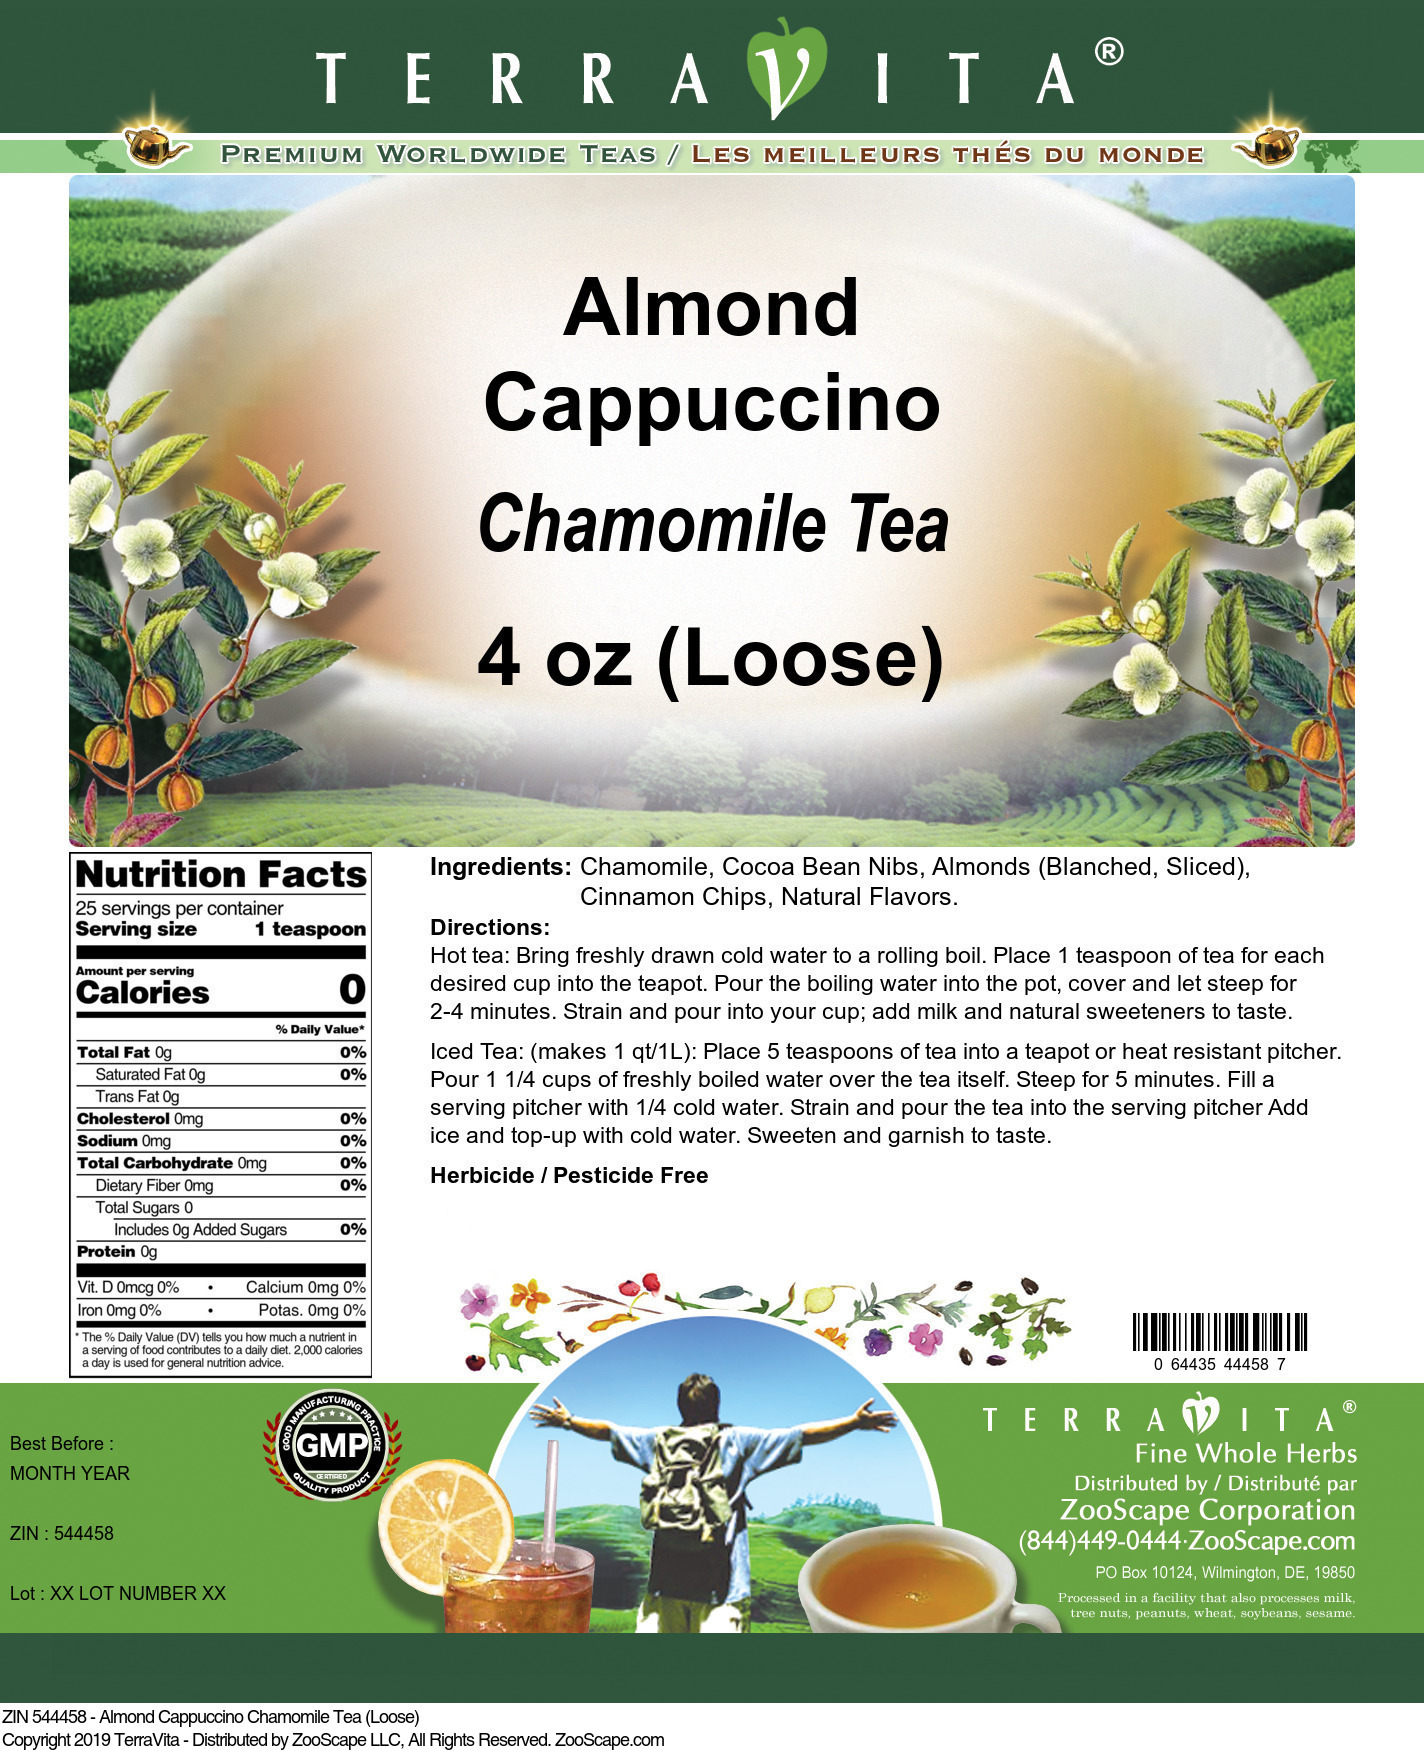 Almond Cappuccino Chamomile Tea (Loose) - Label